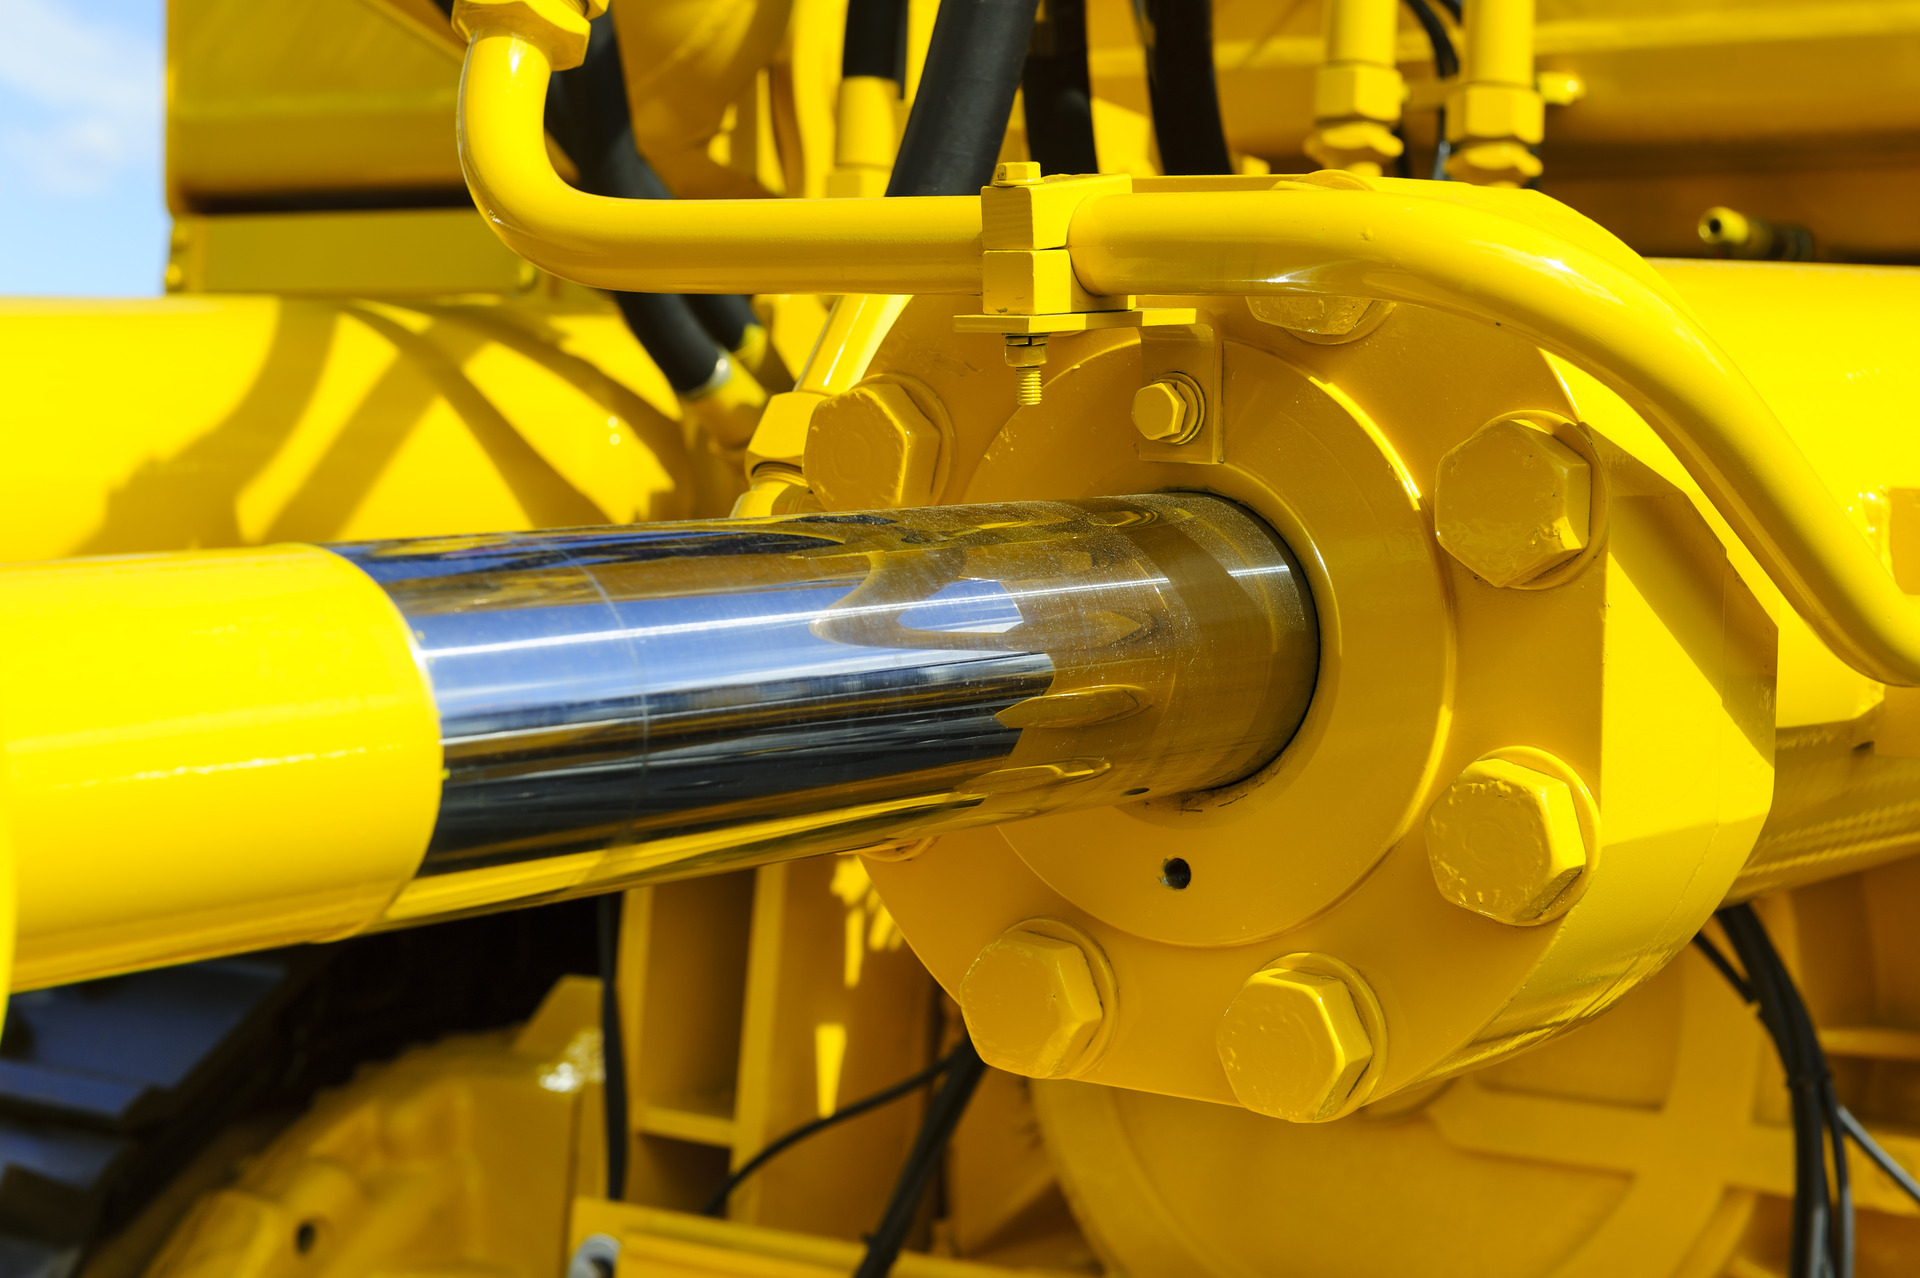 液压活塞系统适用于推土机、拖拉机、挖掘机。镀铬气缸轴的黄色机器